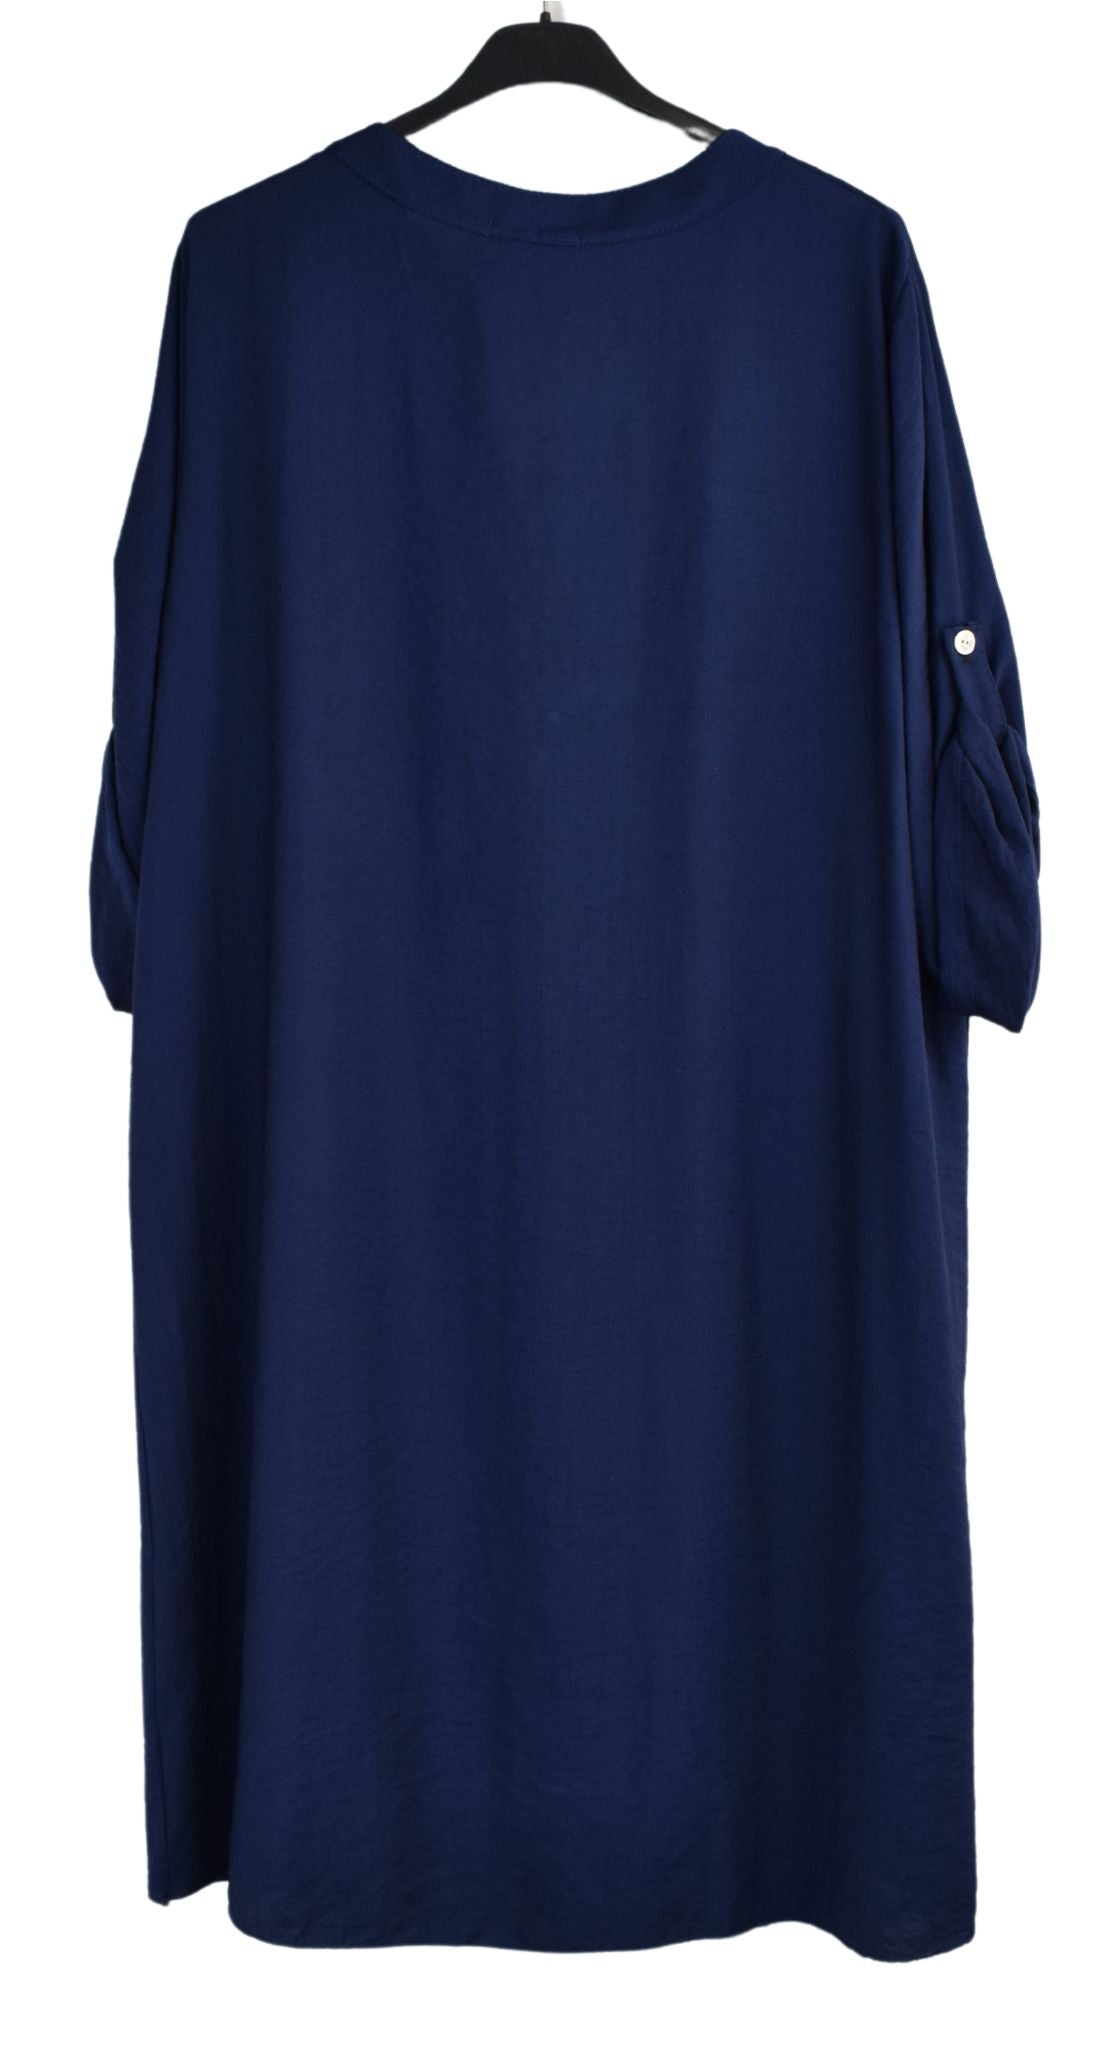 A-line Lightweight Midi Dress with Button Detail Women's Knee length dress for Summer